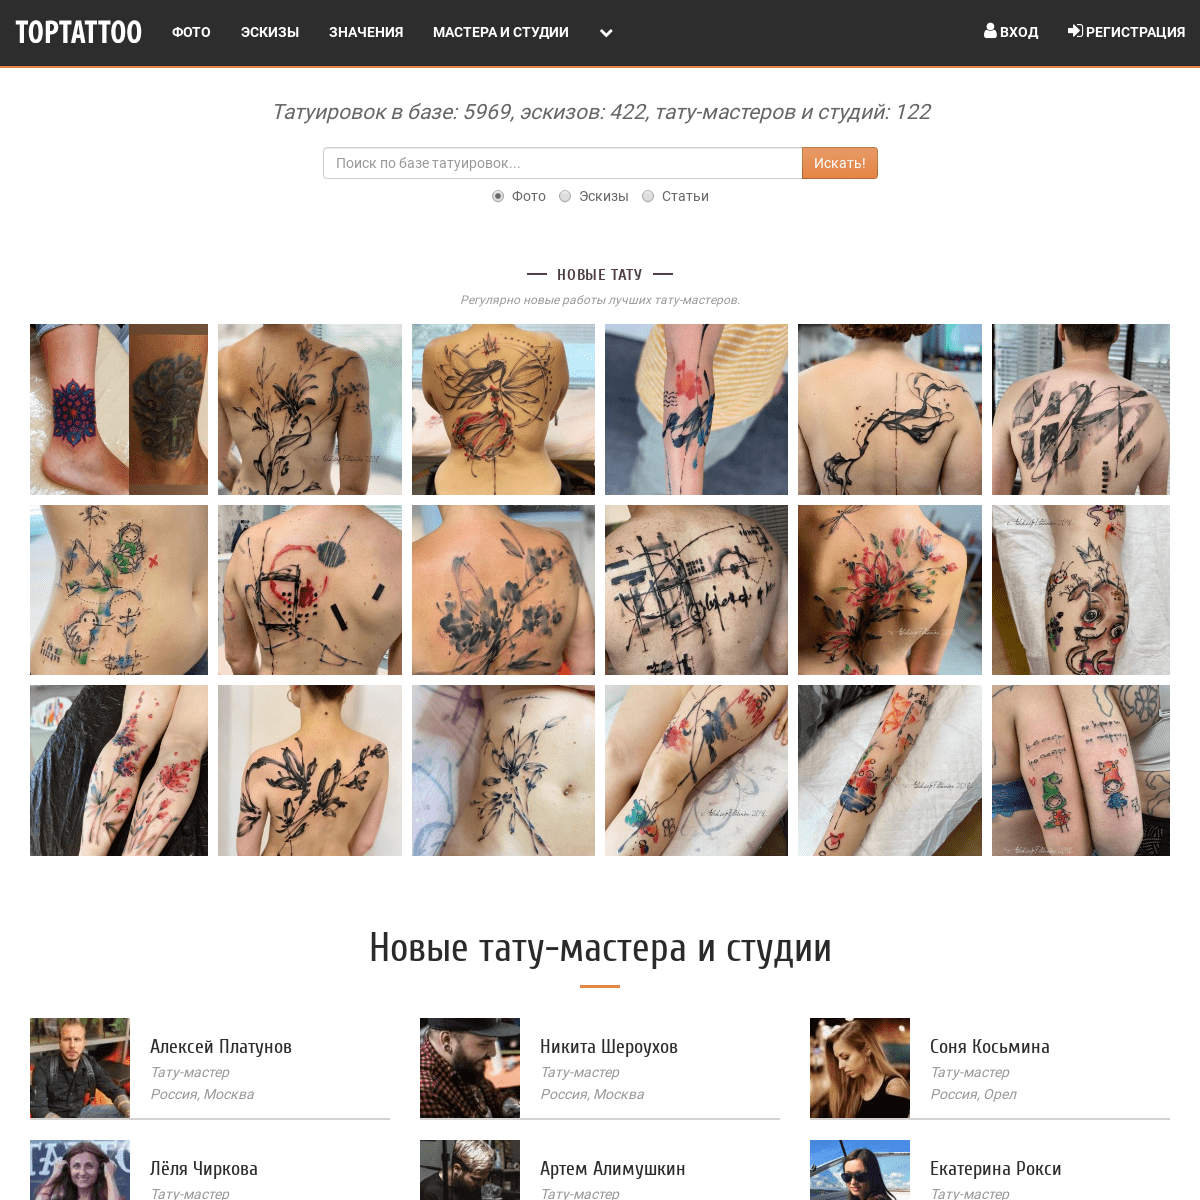 TopTattoo - Значение татуировок, фото, эскизы, каталог тату-мастеров и студий